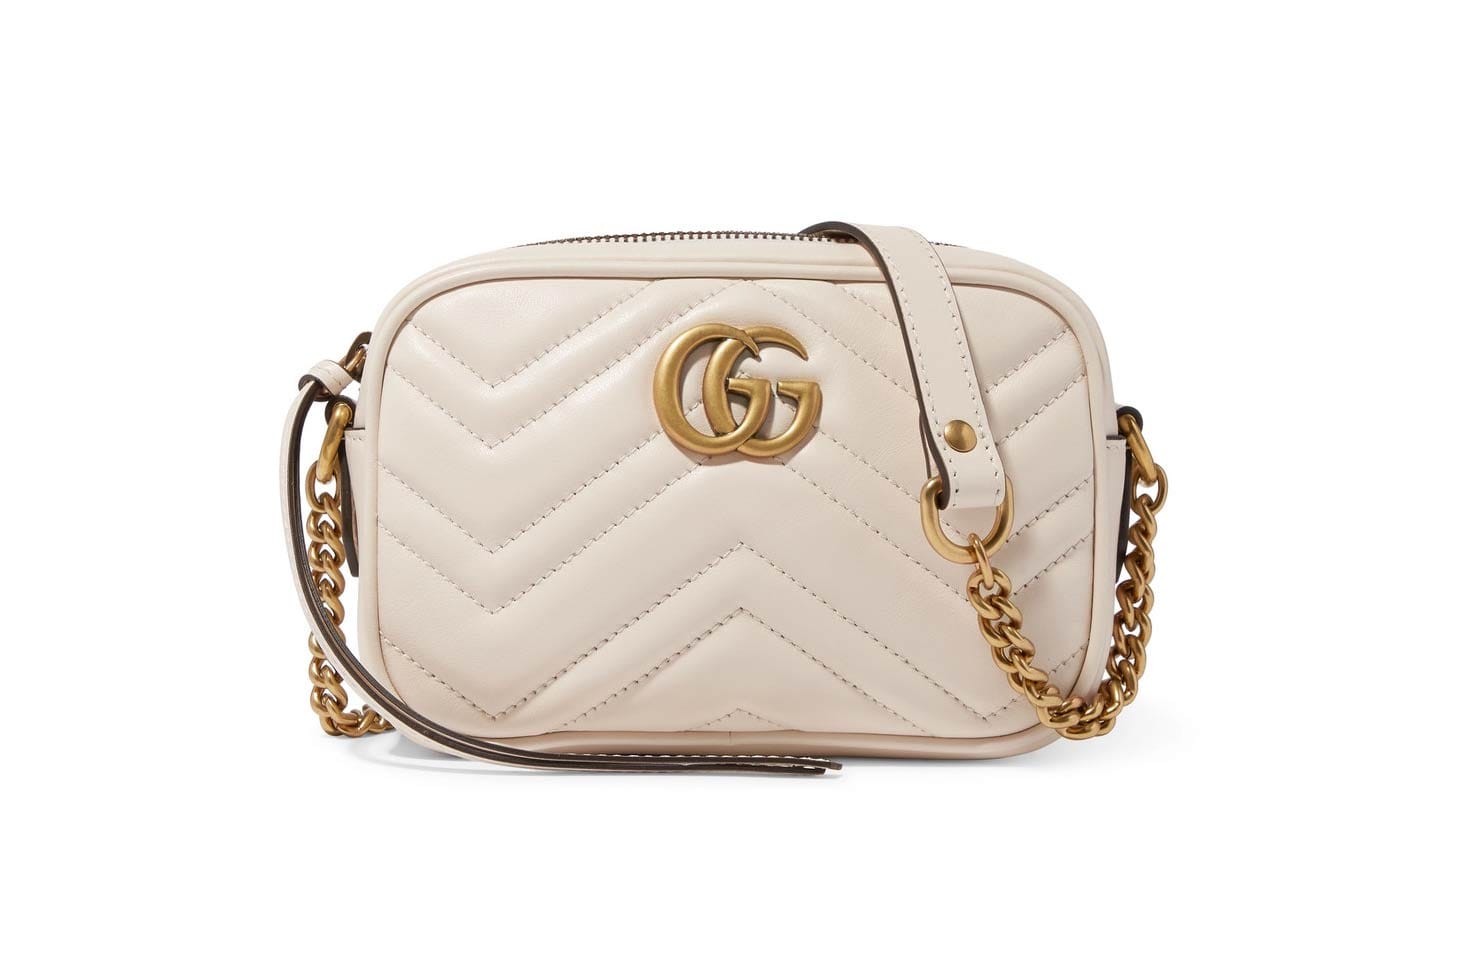 Gucci's Marmont Mini Camera Bag in 